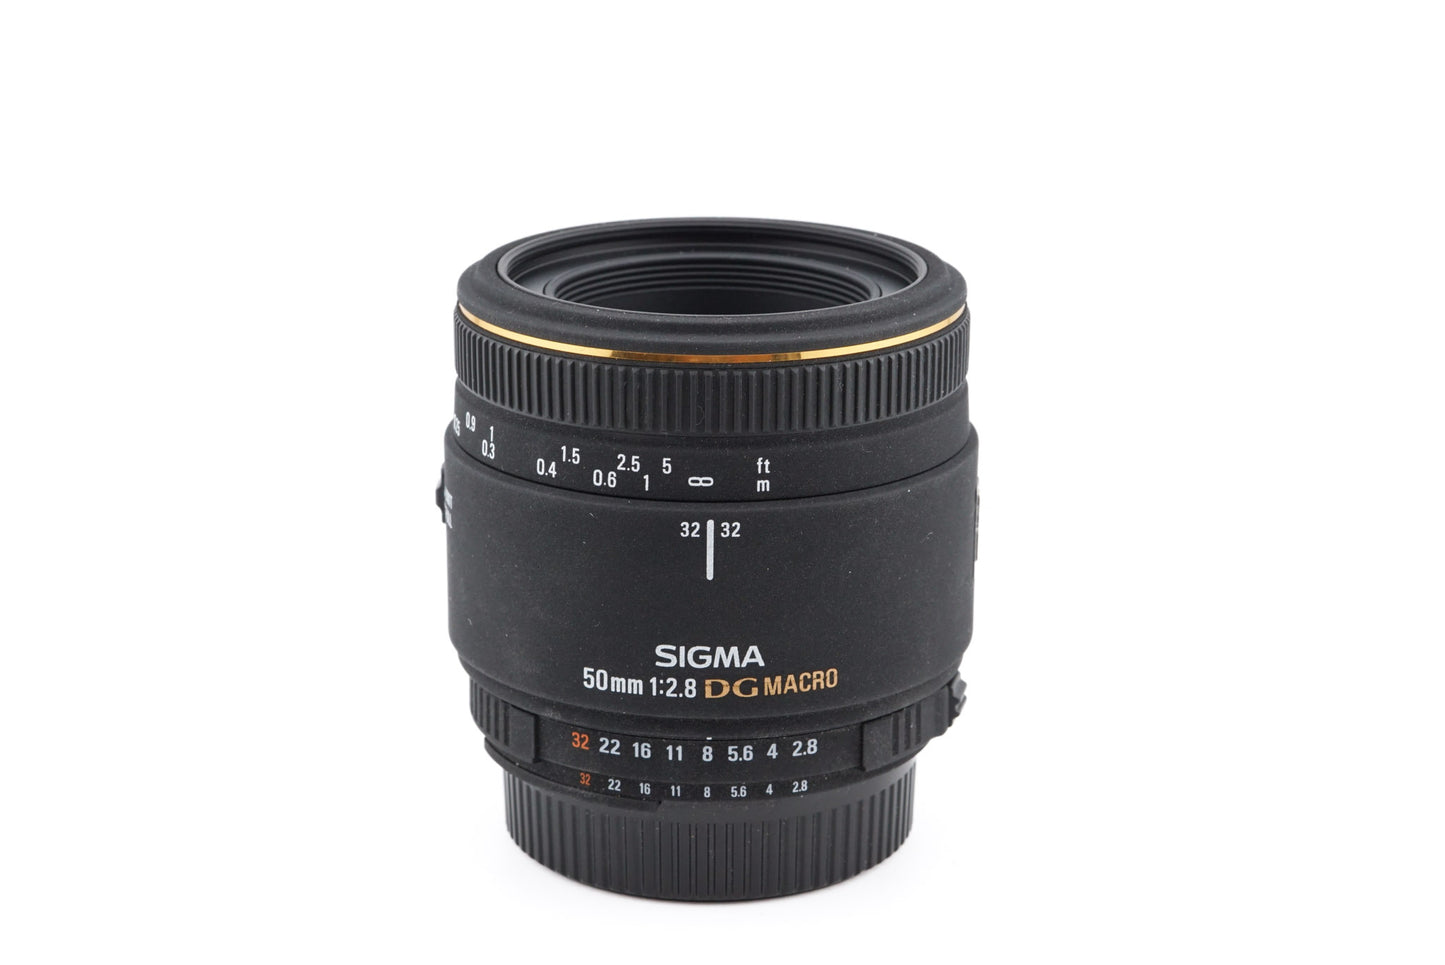 Sigma 50mm f2.8 EX DG Macro - Lens